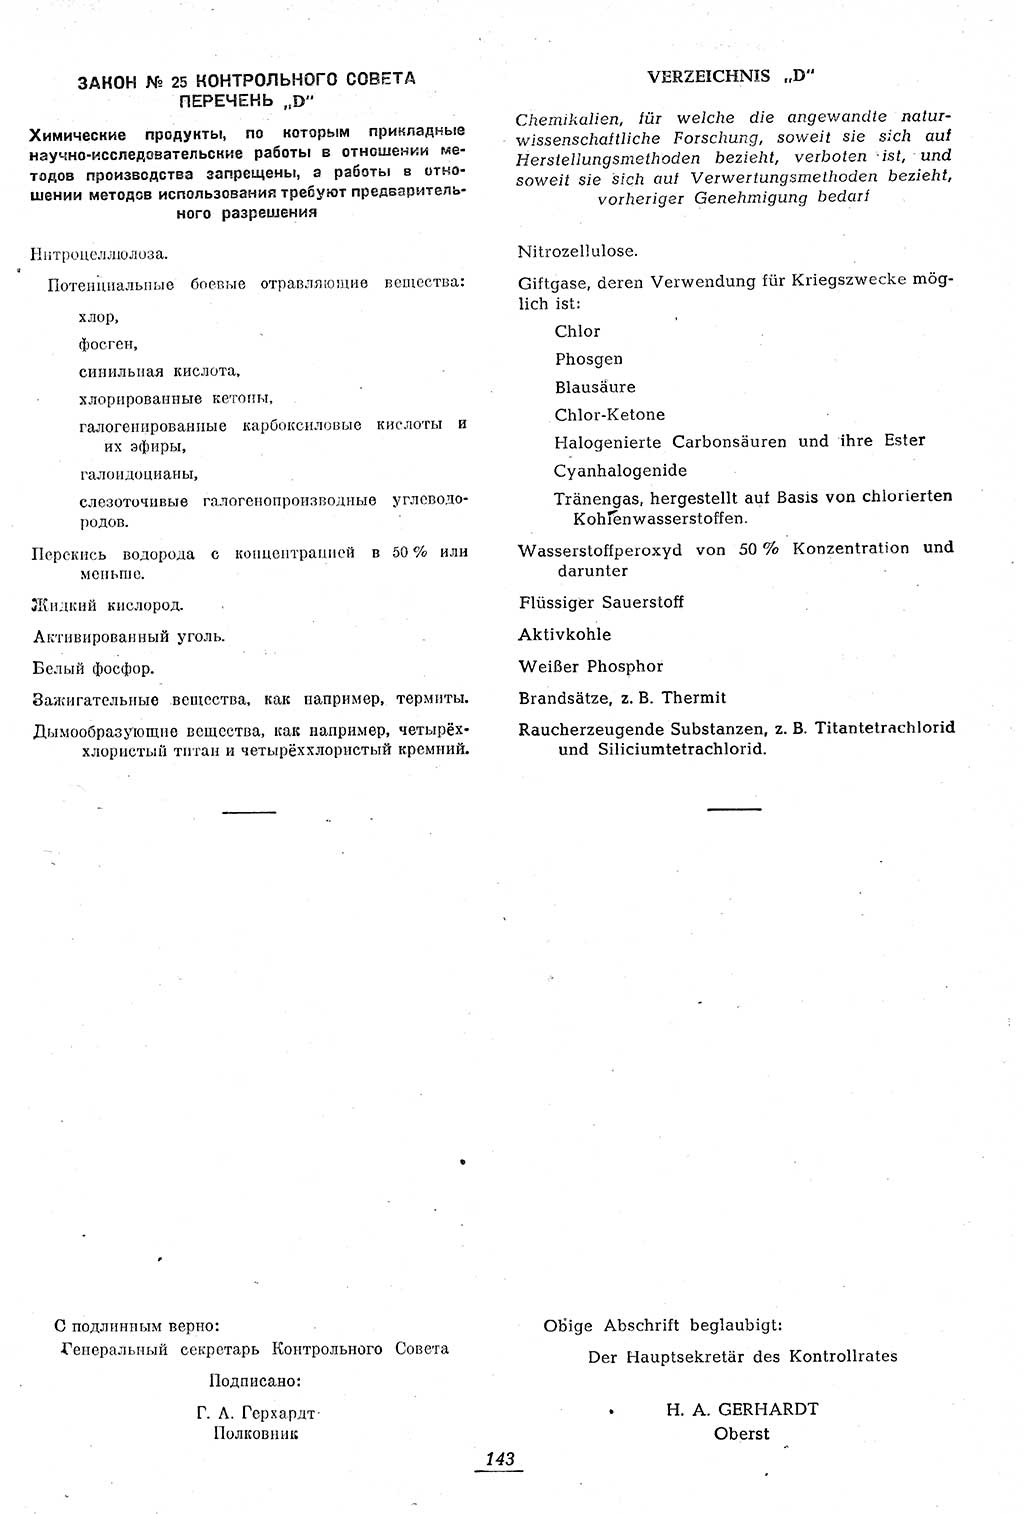 Amtsblatt des Kontrollrats (ABlKR) in Deutschland 1946, Seite 143/2 (ABlKR Dtl. 1946, S. 143/2)